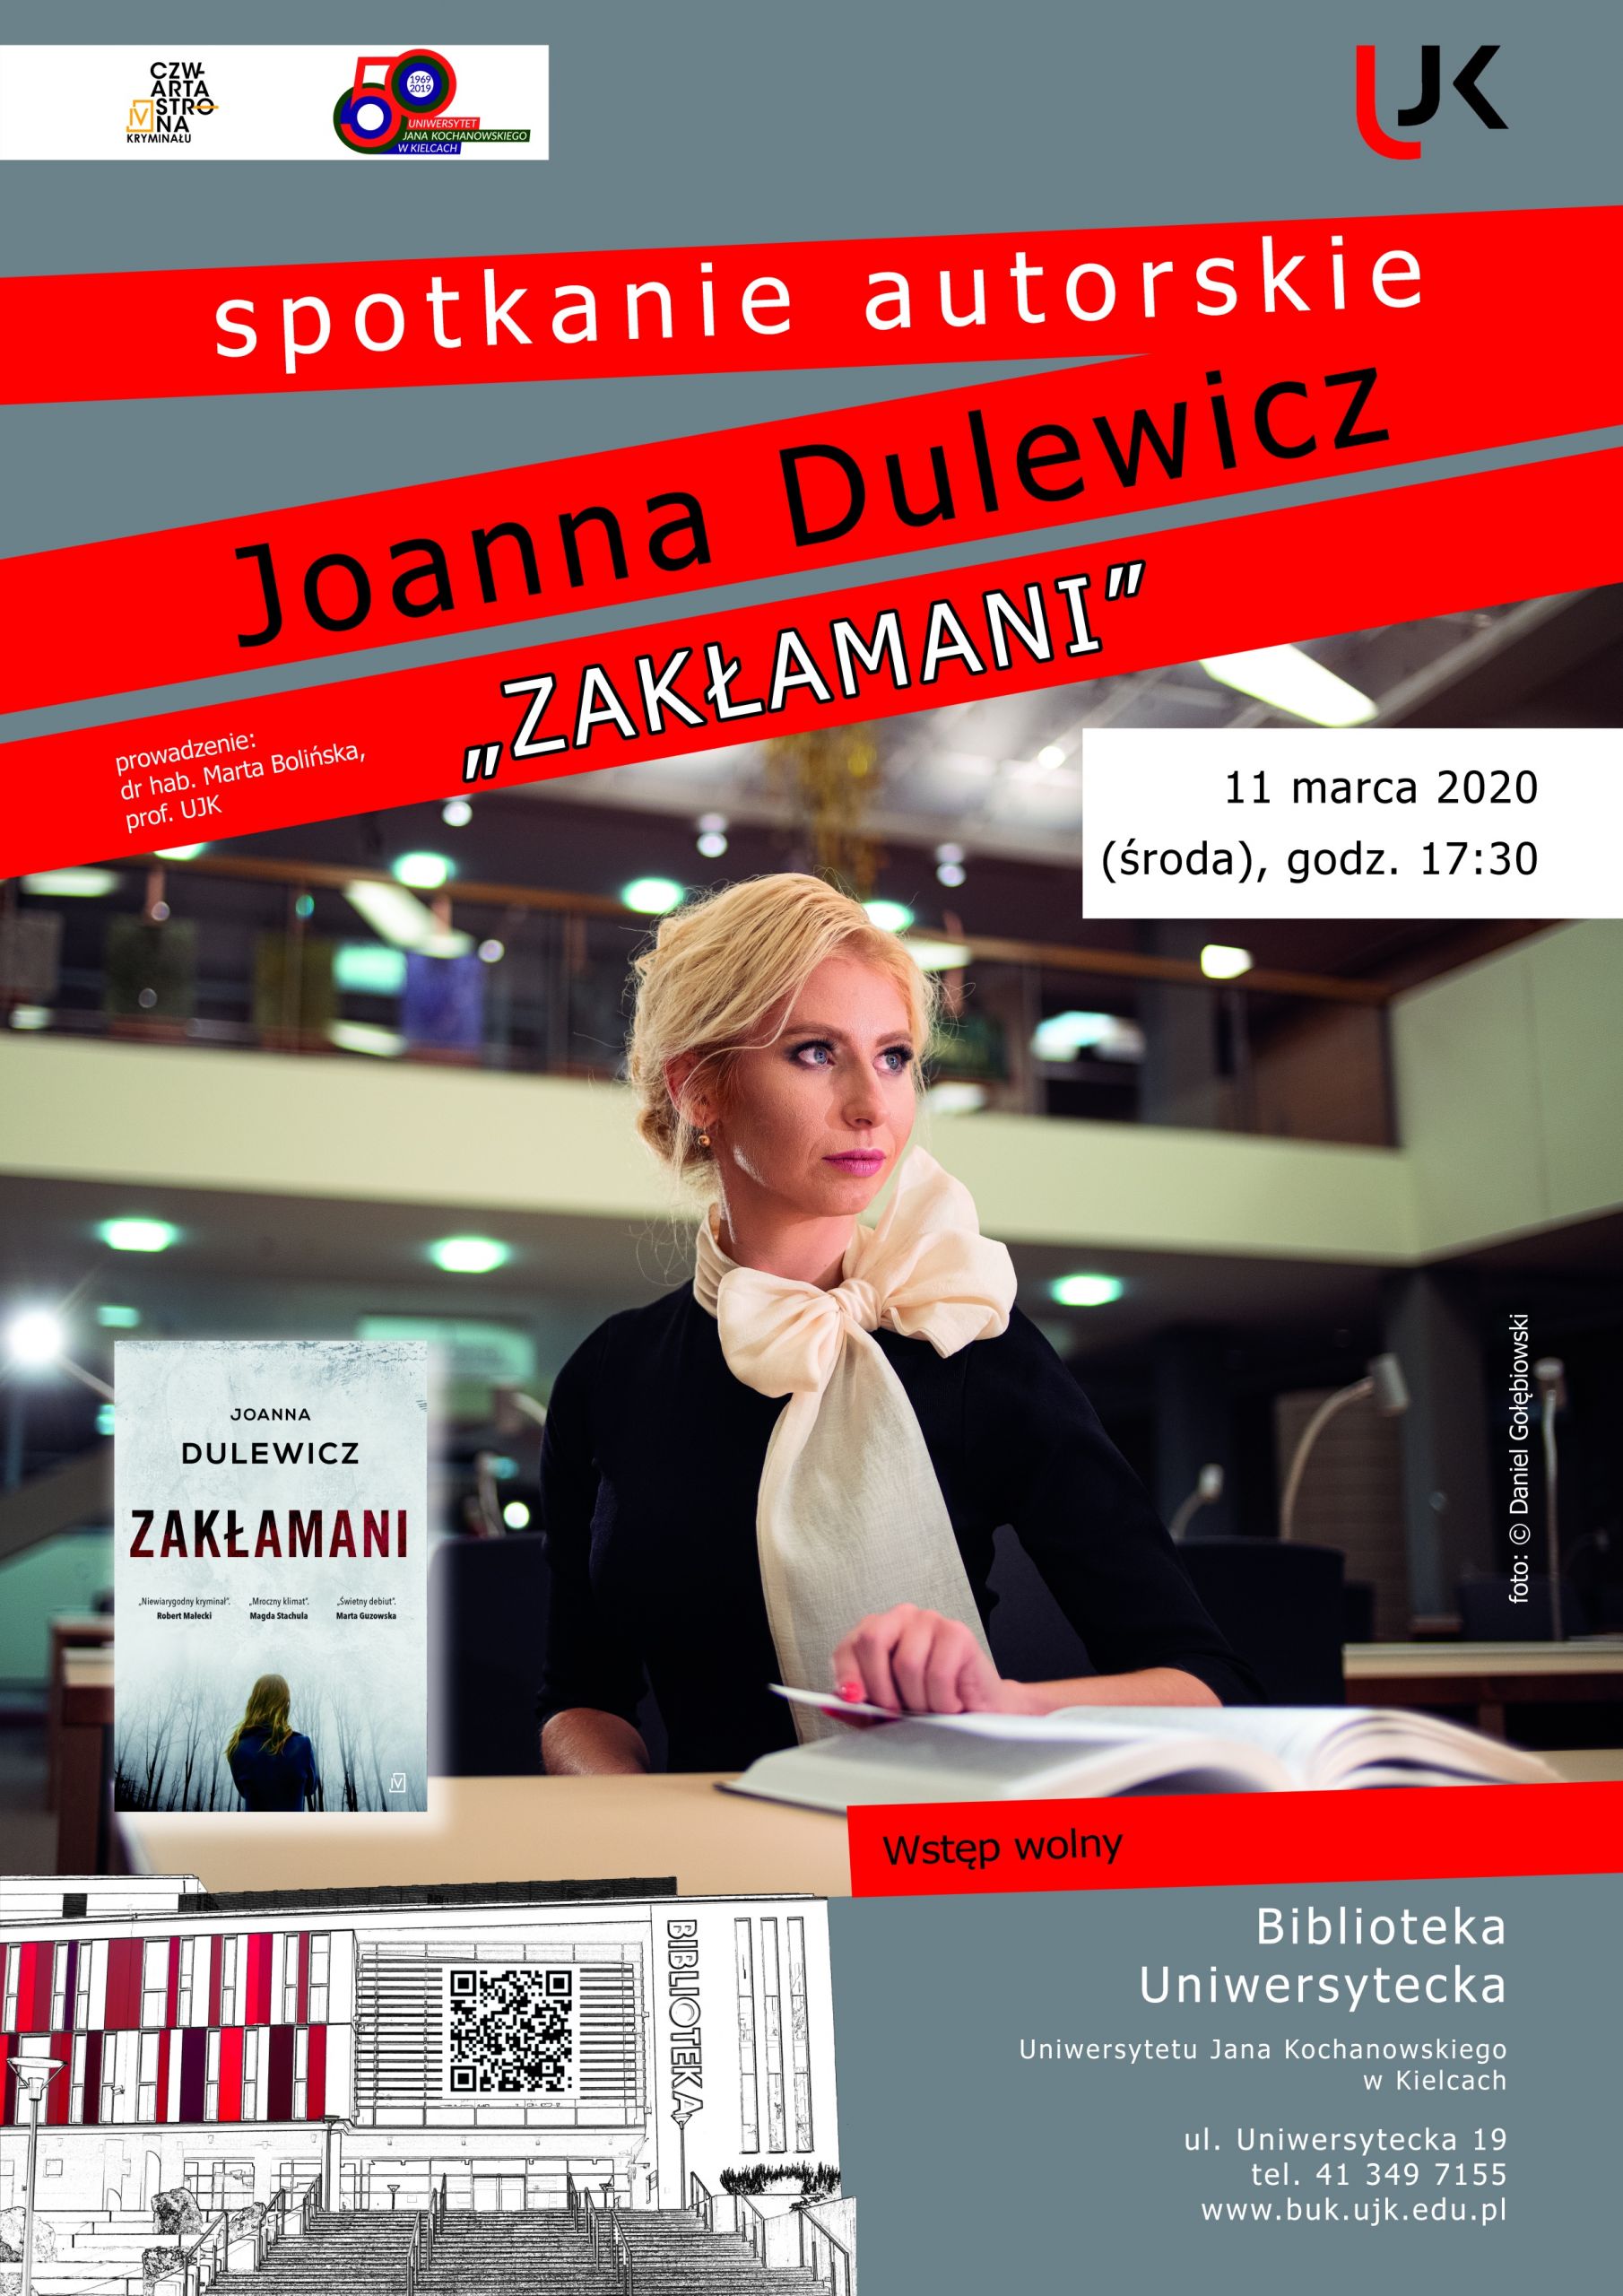 Plakat promujący spotkanie z Joanną Dulewicz